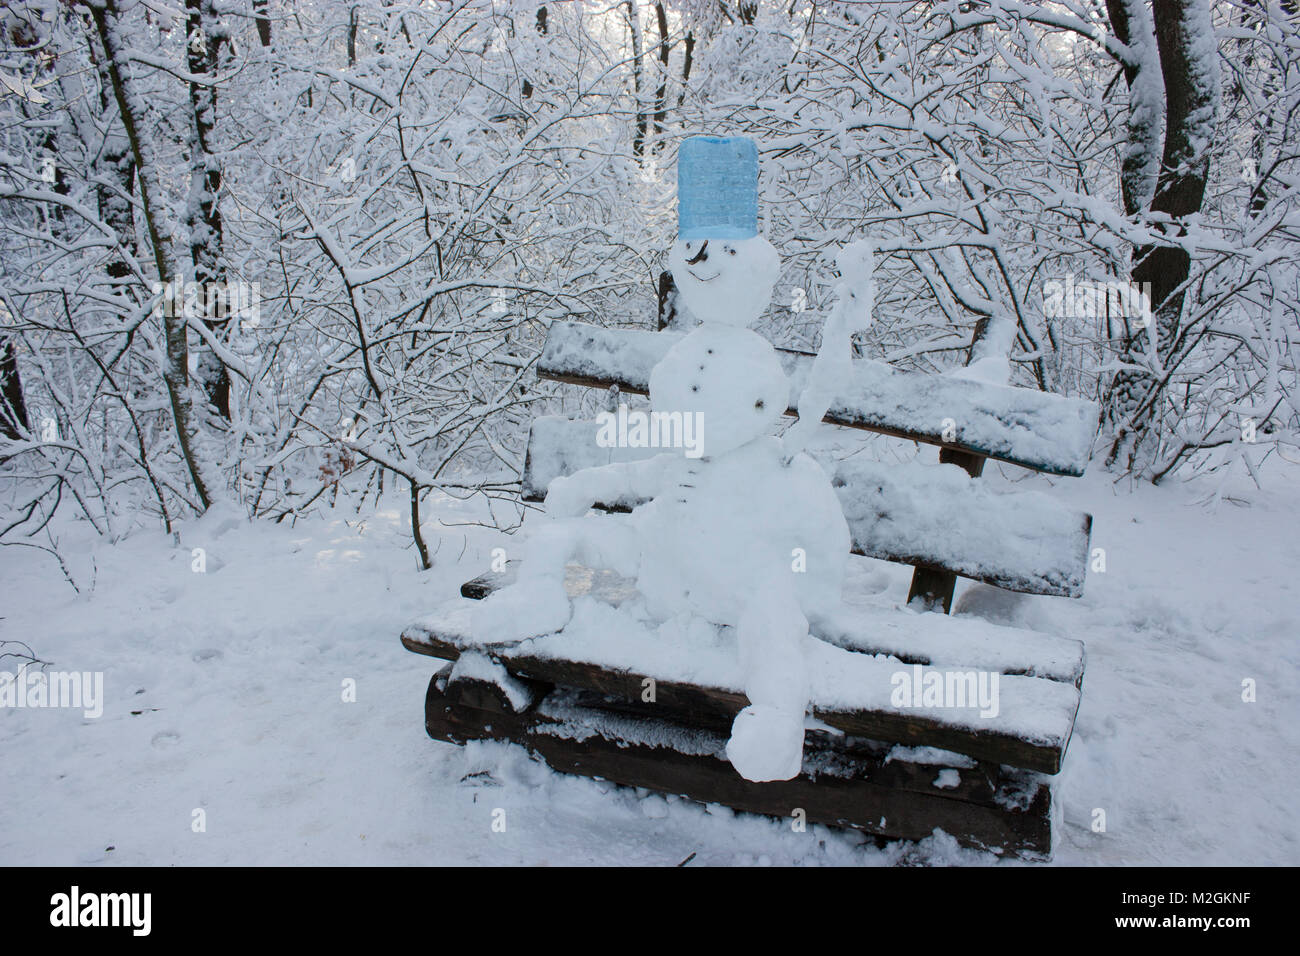 Schneemann sitzt auf einer Bank im Wald im Winter, viel Schnee, Bäume im Schnee Stockfoto